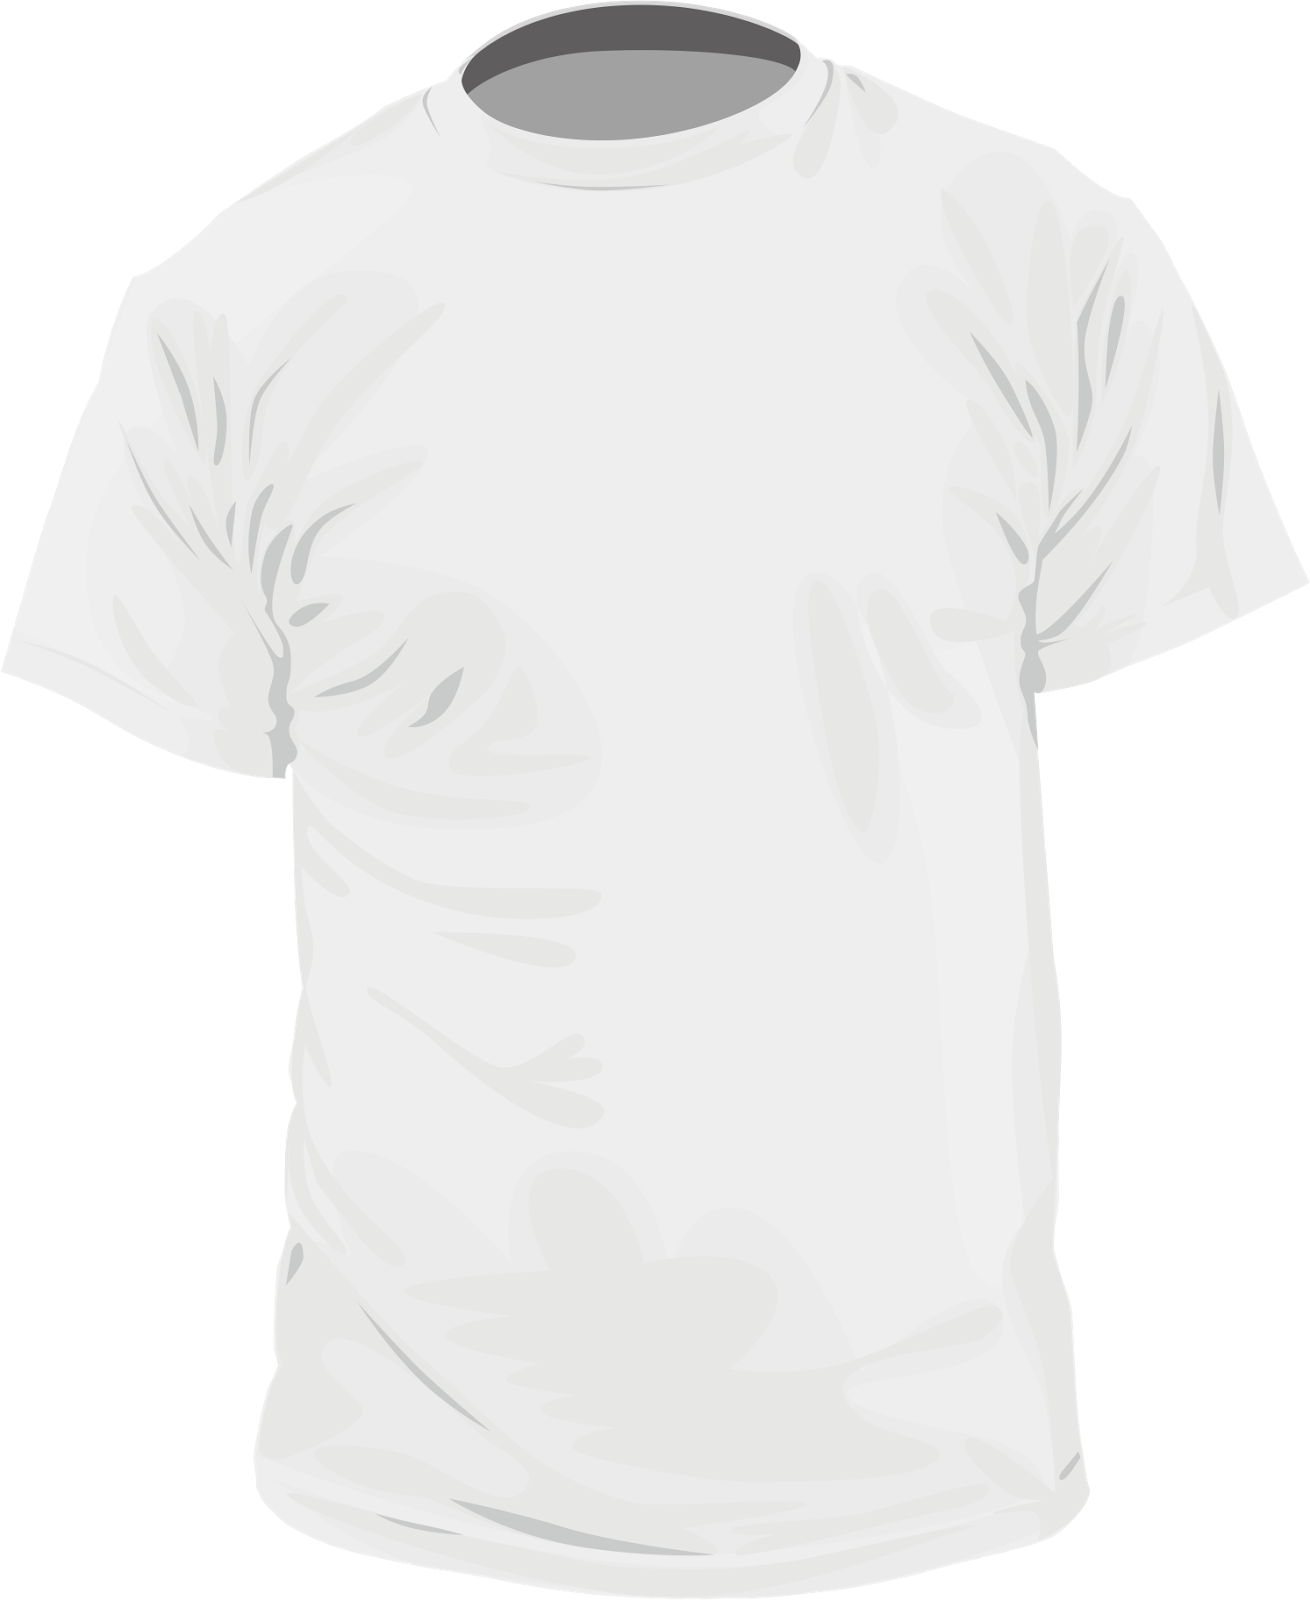 Download Gambar Kaos Putih Polos Untuk Desain - serat